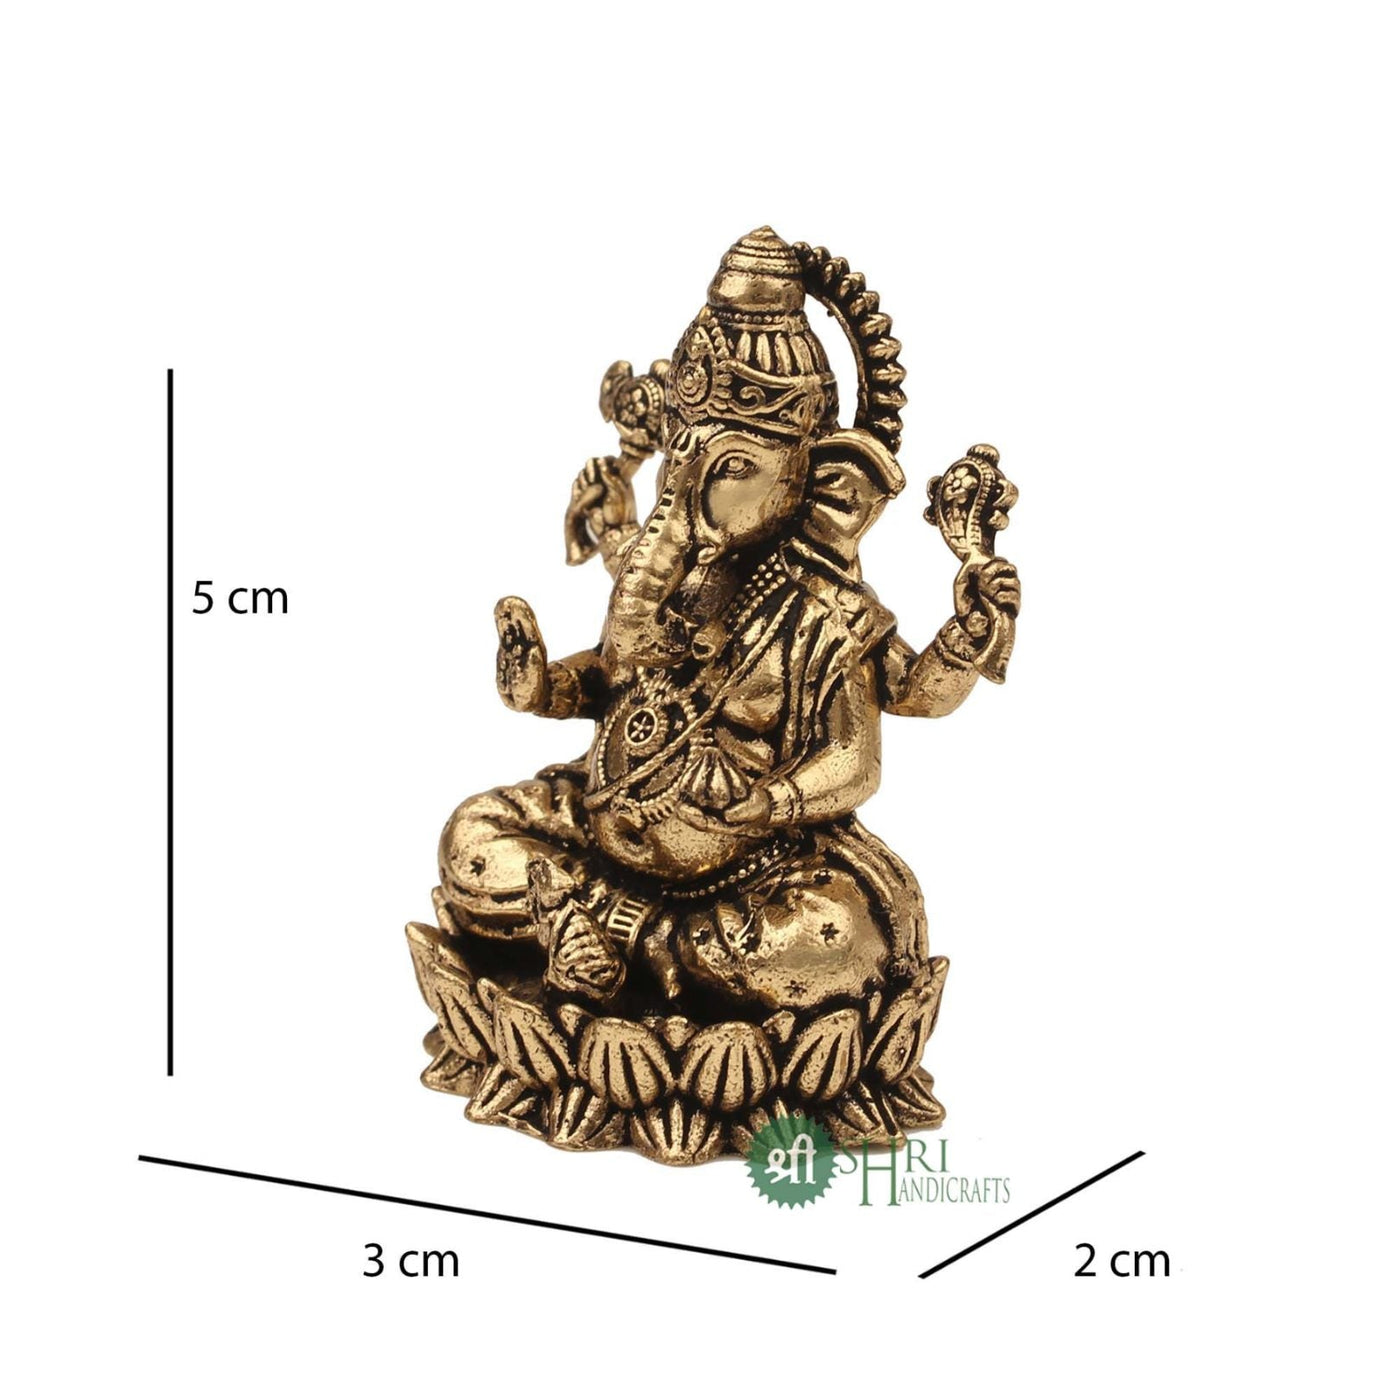 Small Ganpati Brass Statue 2 Inch By Trendia Decor